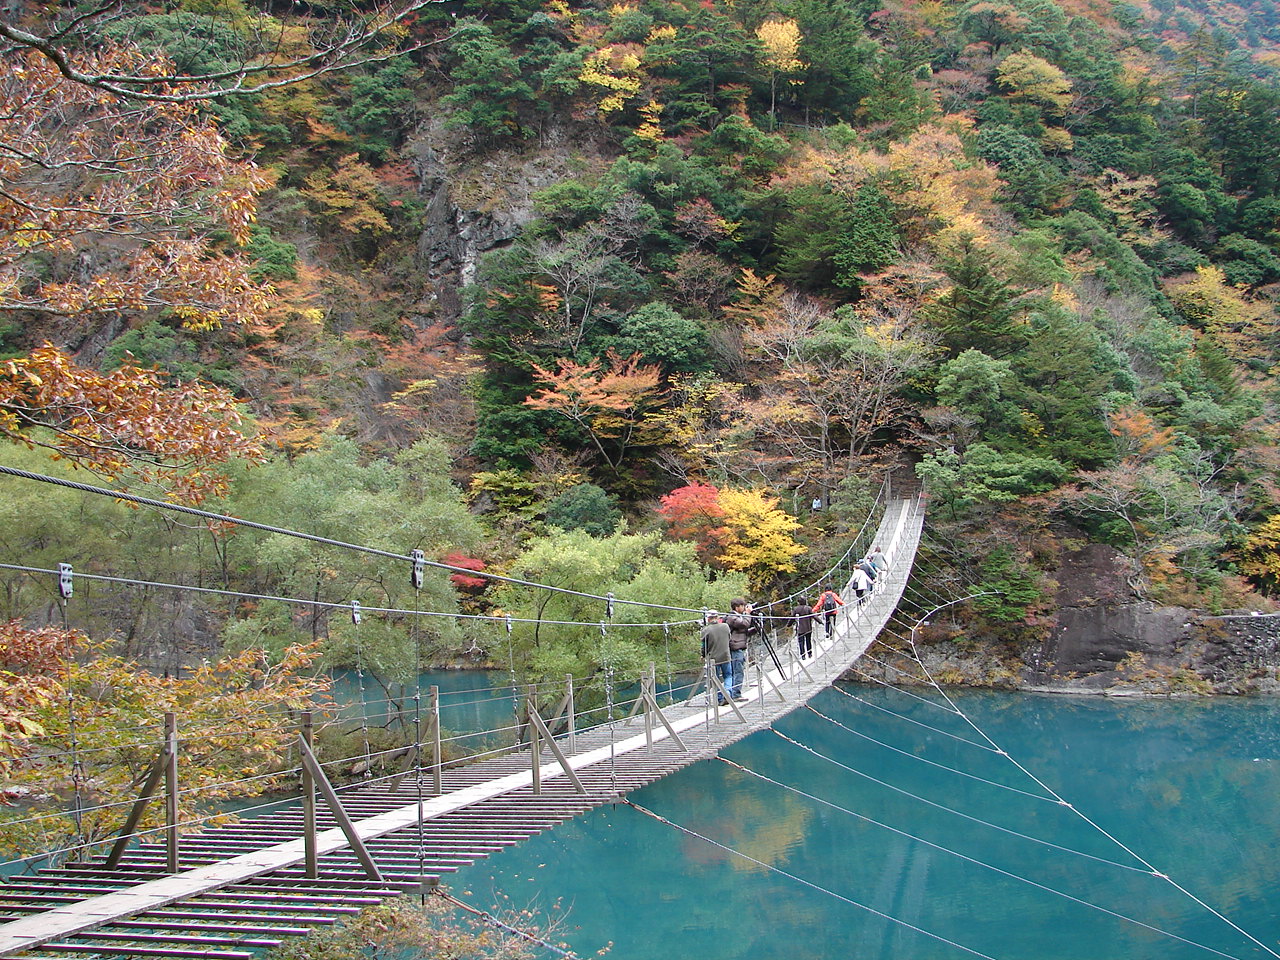 死ぬまでに渡りたい 夢のつり橋 で有名な寸又峡の紅葉狩りをレポート 静岡県観光公式ブログ